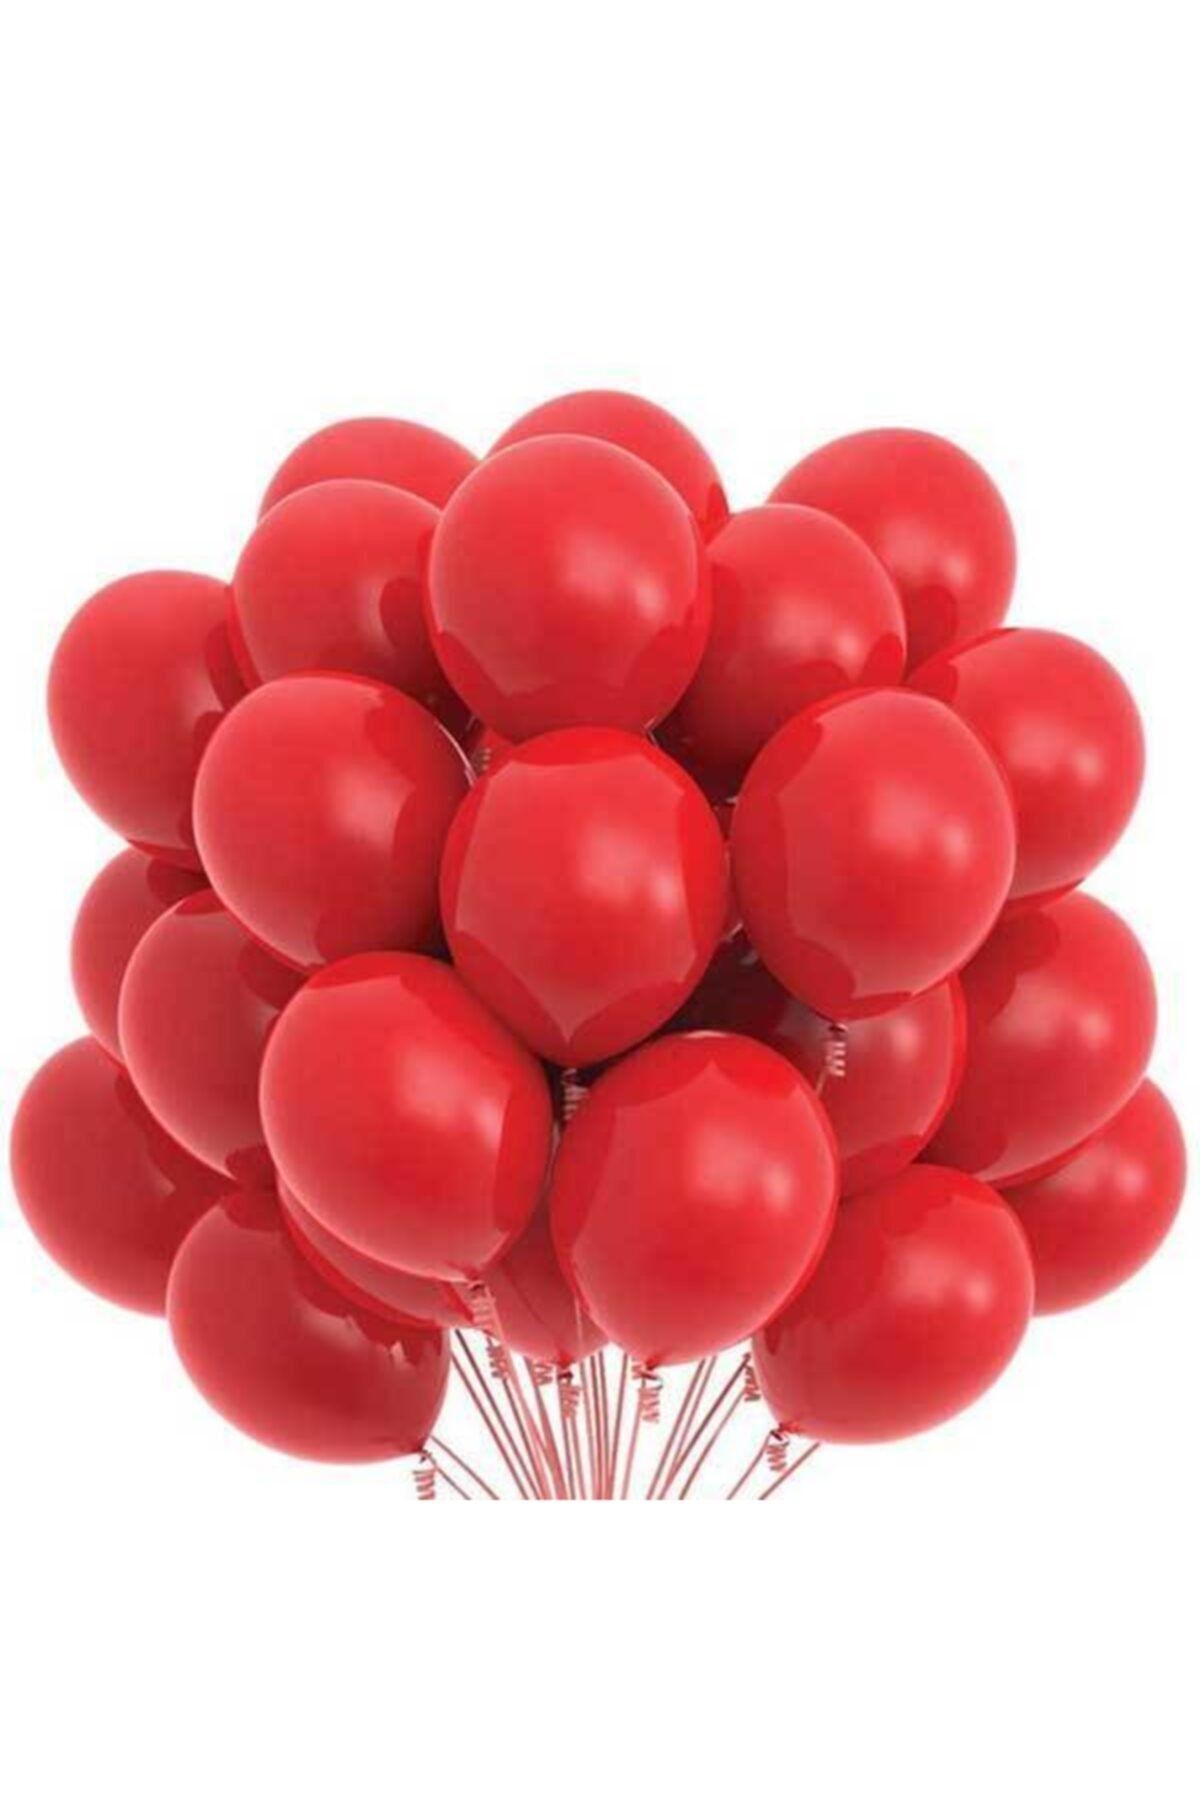 eğlencemarketi 12 Inç Standart Boy Pastel Balon 10 Adet Kırmızı